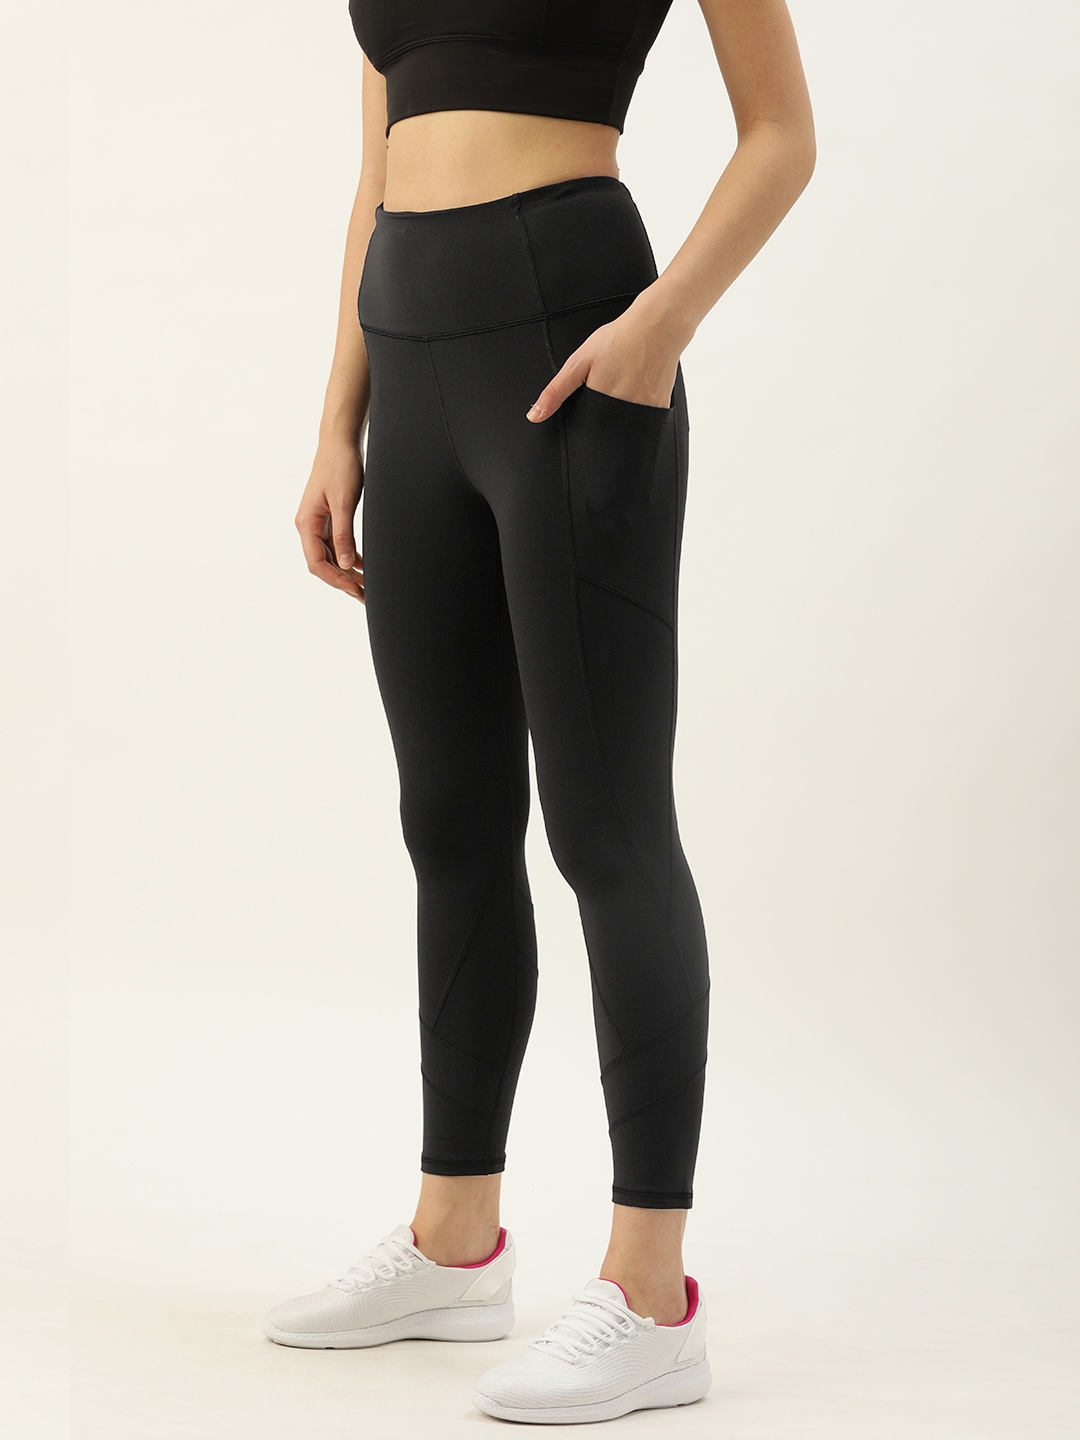 Buy Enamor Women Athleisure Black Dry Fit Legging E258 - Tights for Women  13370640